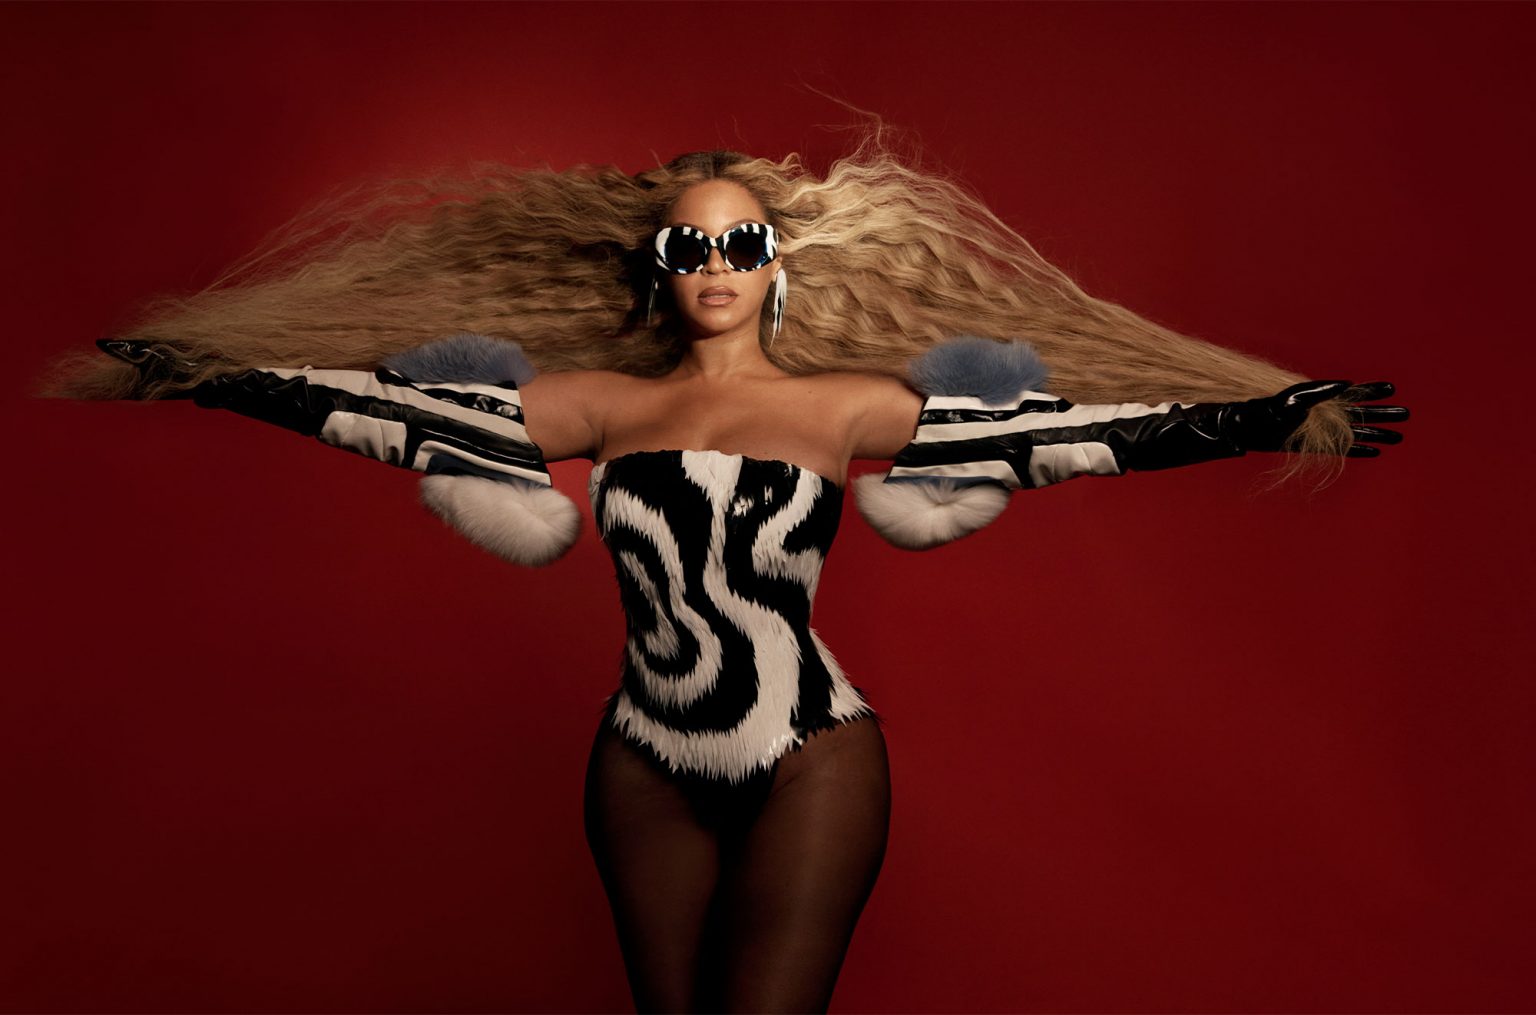 Deezer brasileiros são os que mais ouviram o "Renaissance" de Beyoncé